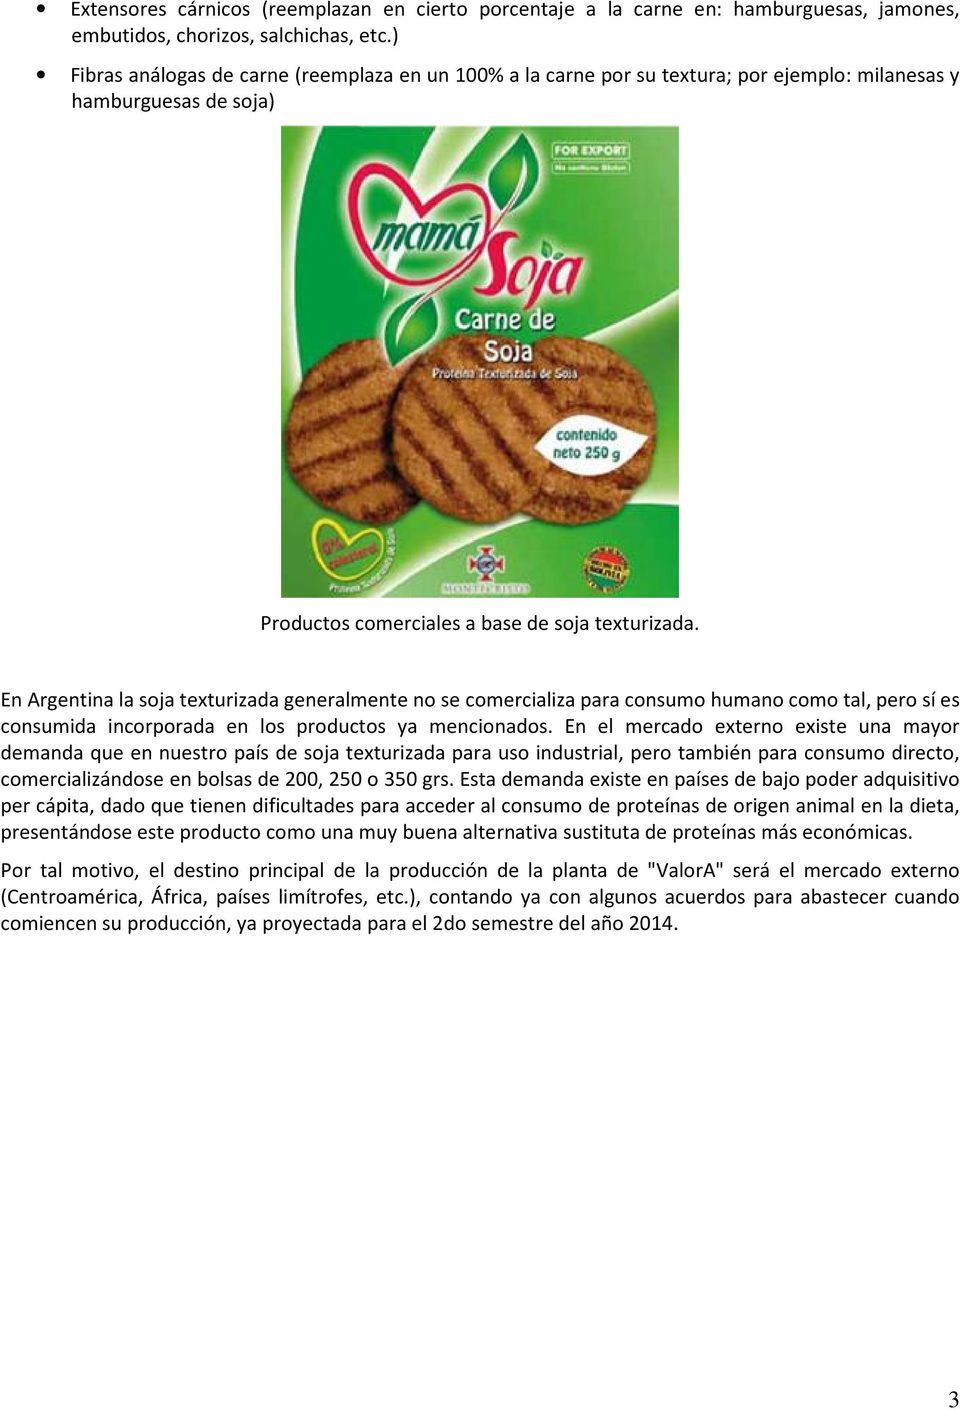 En Argentina la soja texturizada generalmente no se comercializa para consumo humano como tal, pero sí es consumida incorporada en los productos ya mencionados.